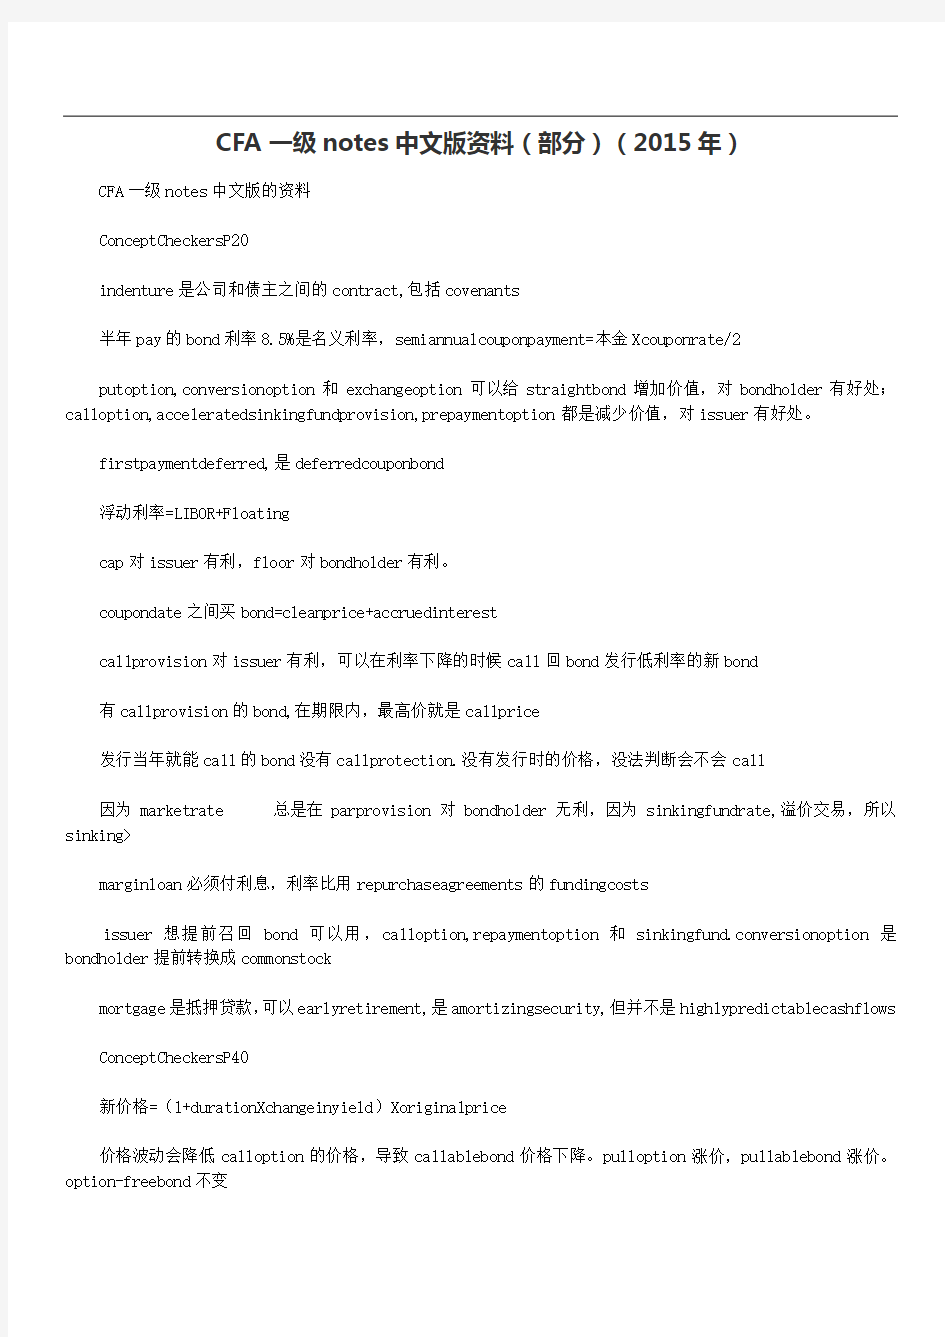 CFA一级notes中文版资料(部分)(2015年)